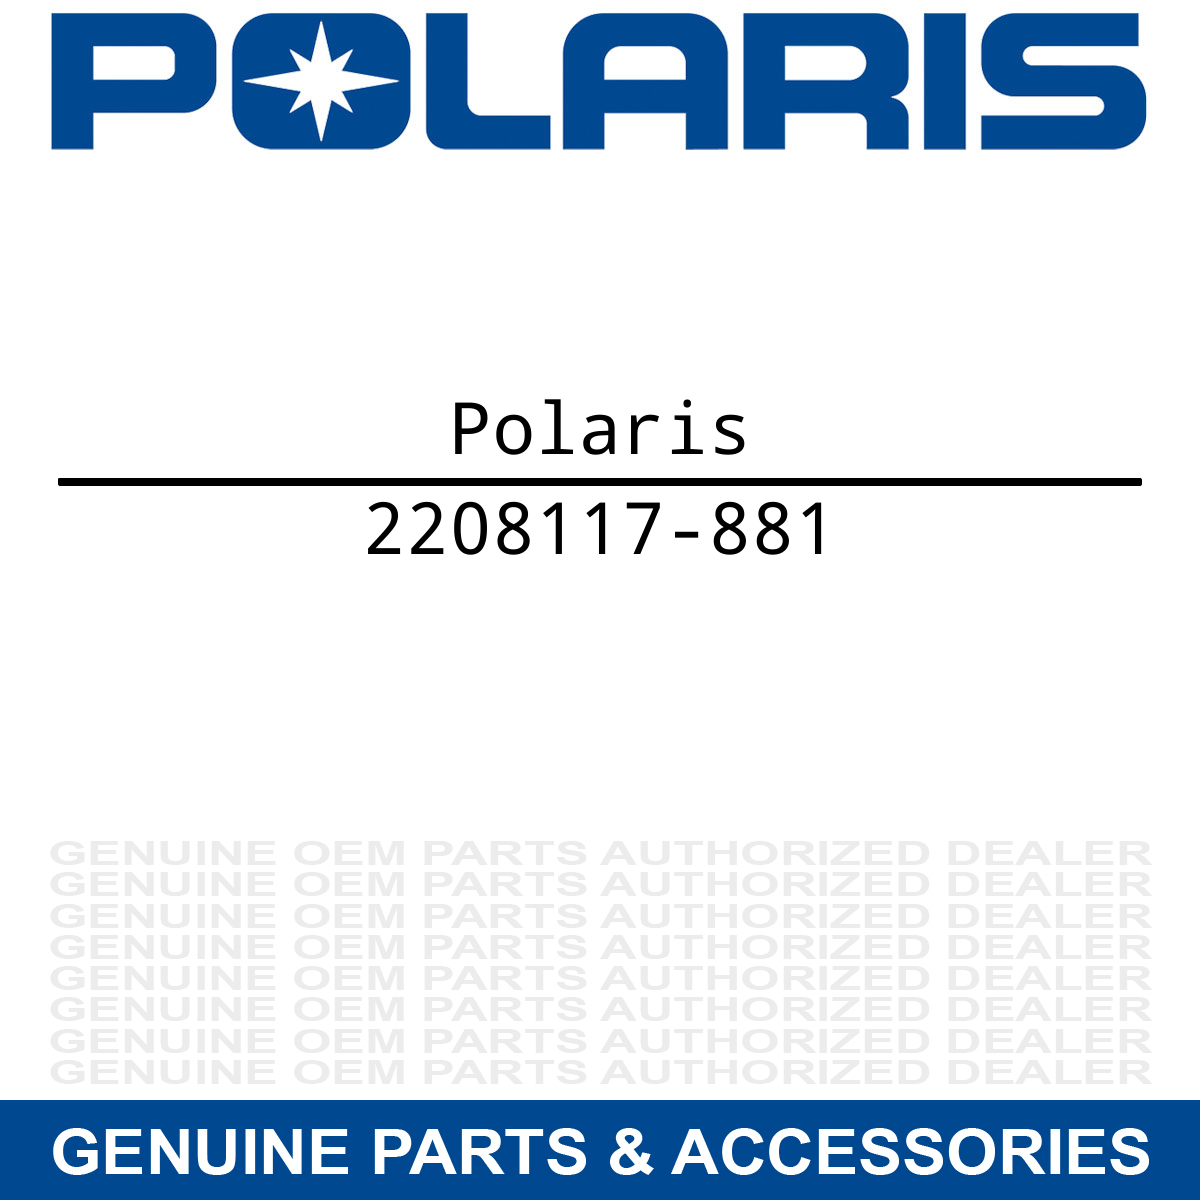 Polaris 2208117-881